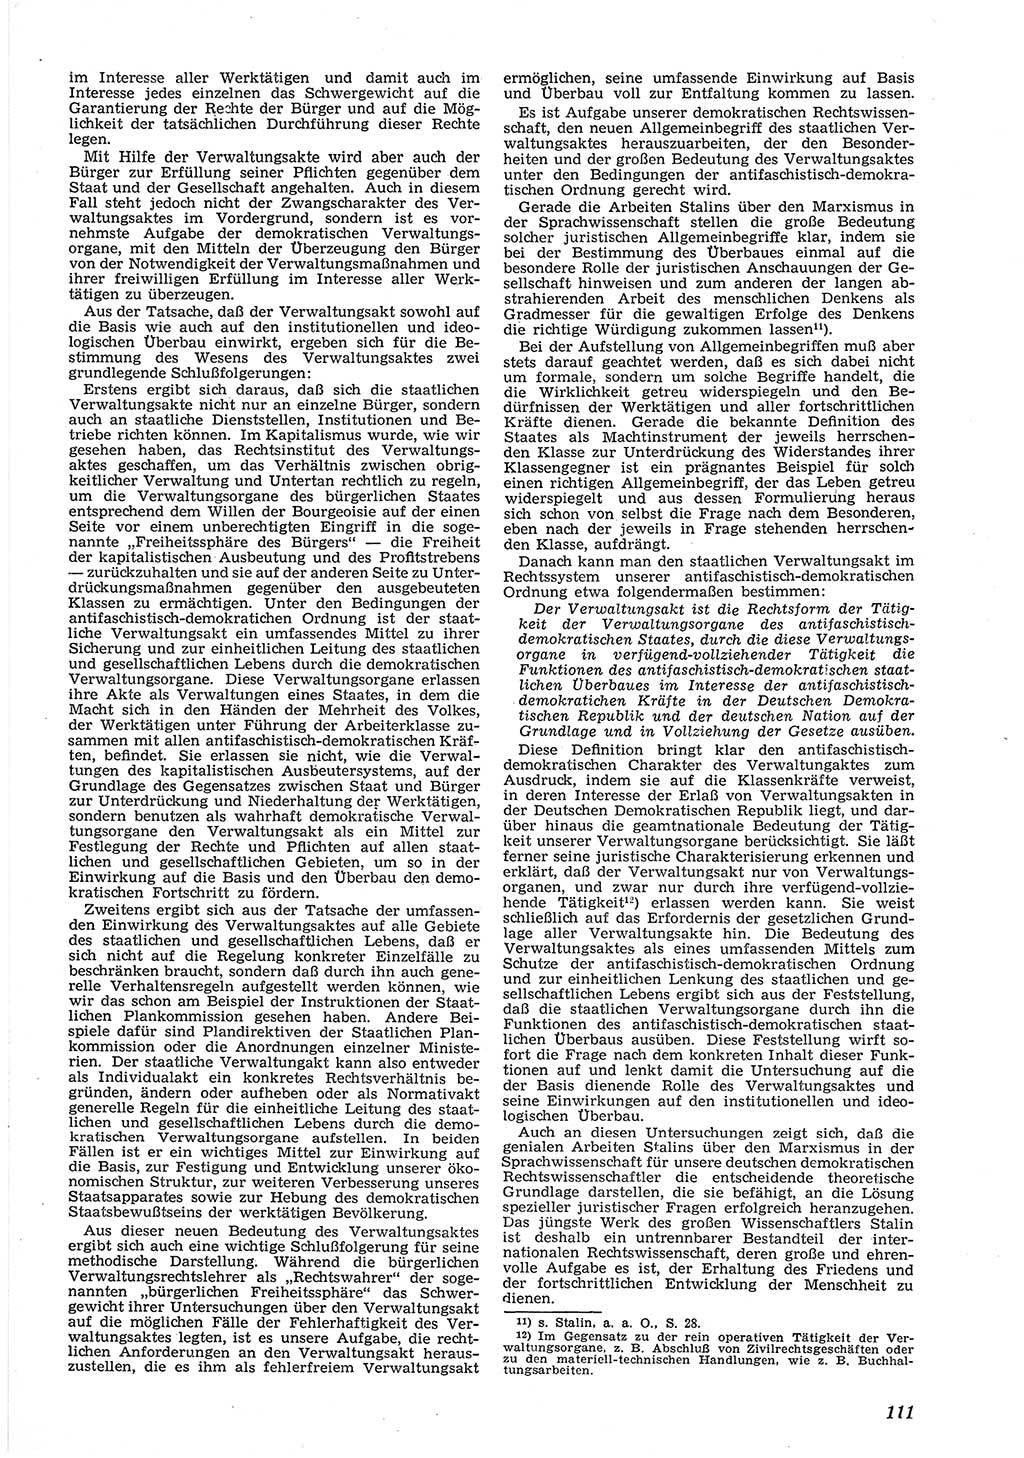 Neue Justiz (NJ), Zeitschrift für Recht und Rechtswissenschaft [Deutsche Demokratische Republik (DDR)], 6. Jahrgang 1952, Seite 111 (NJ DDR 1952, S. 111)